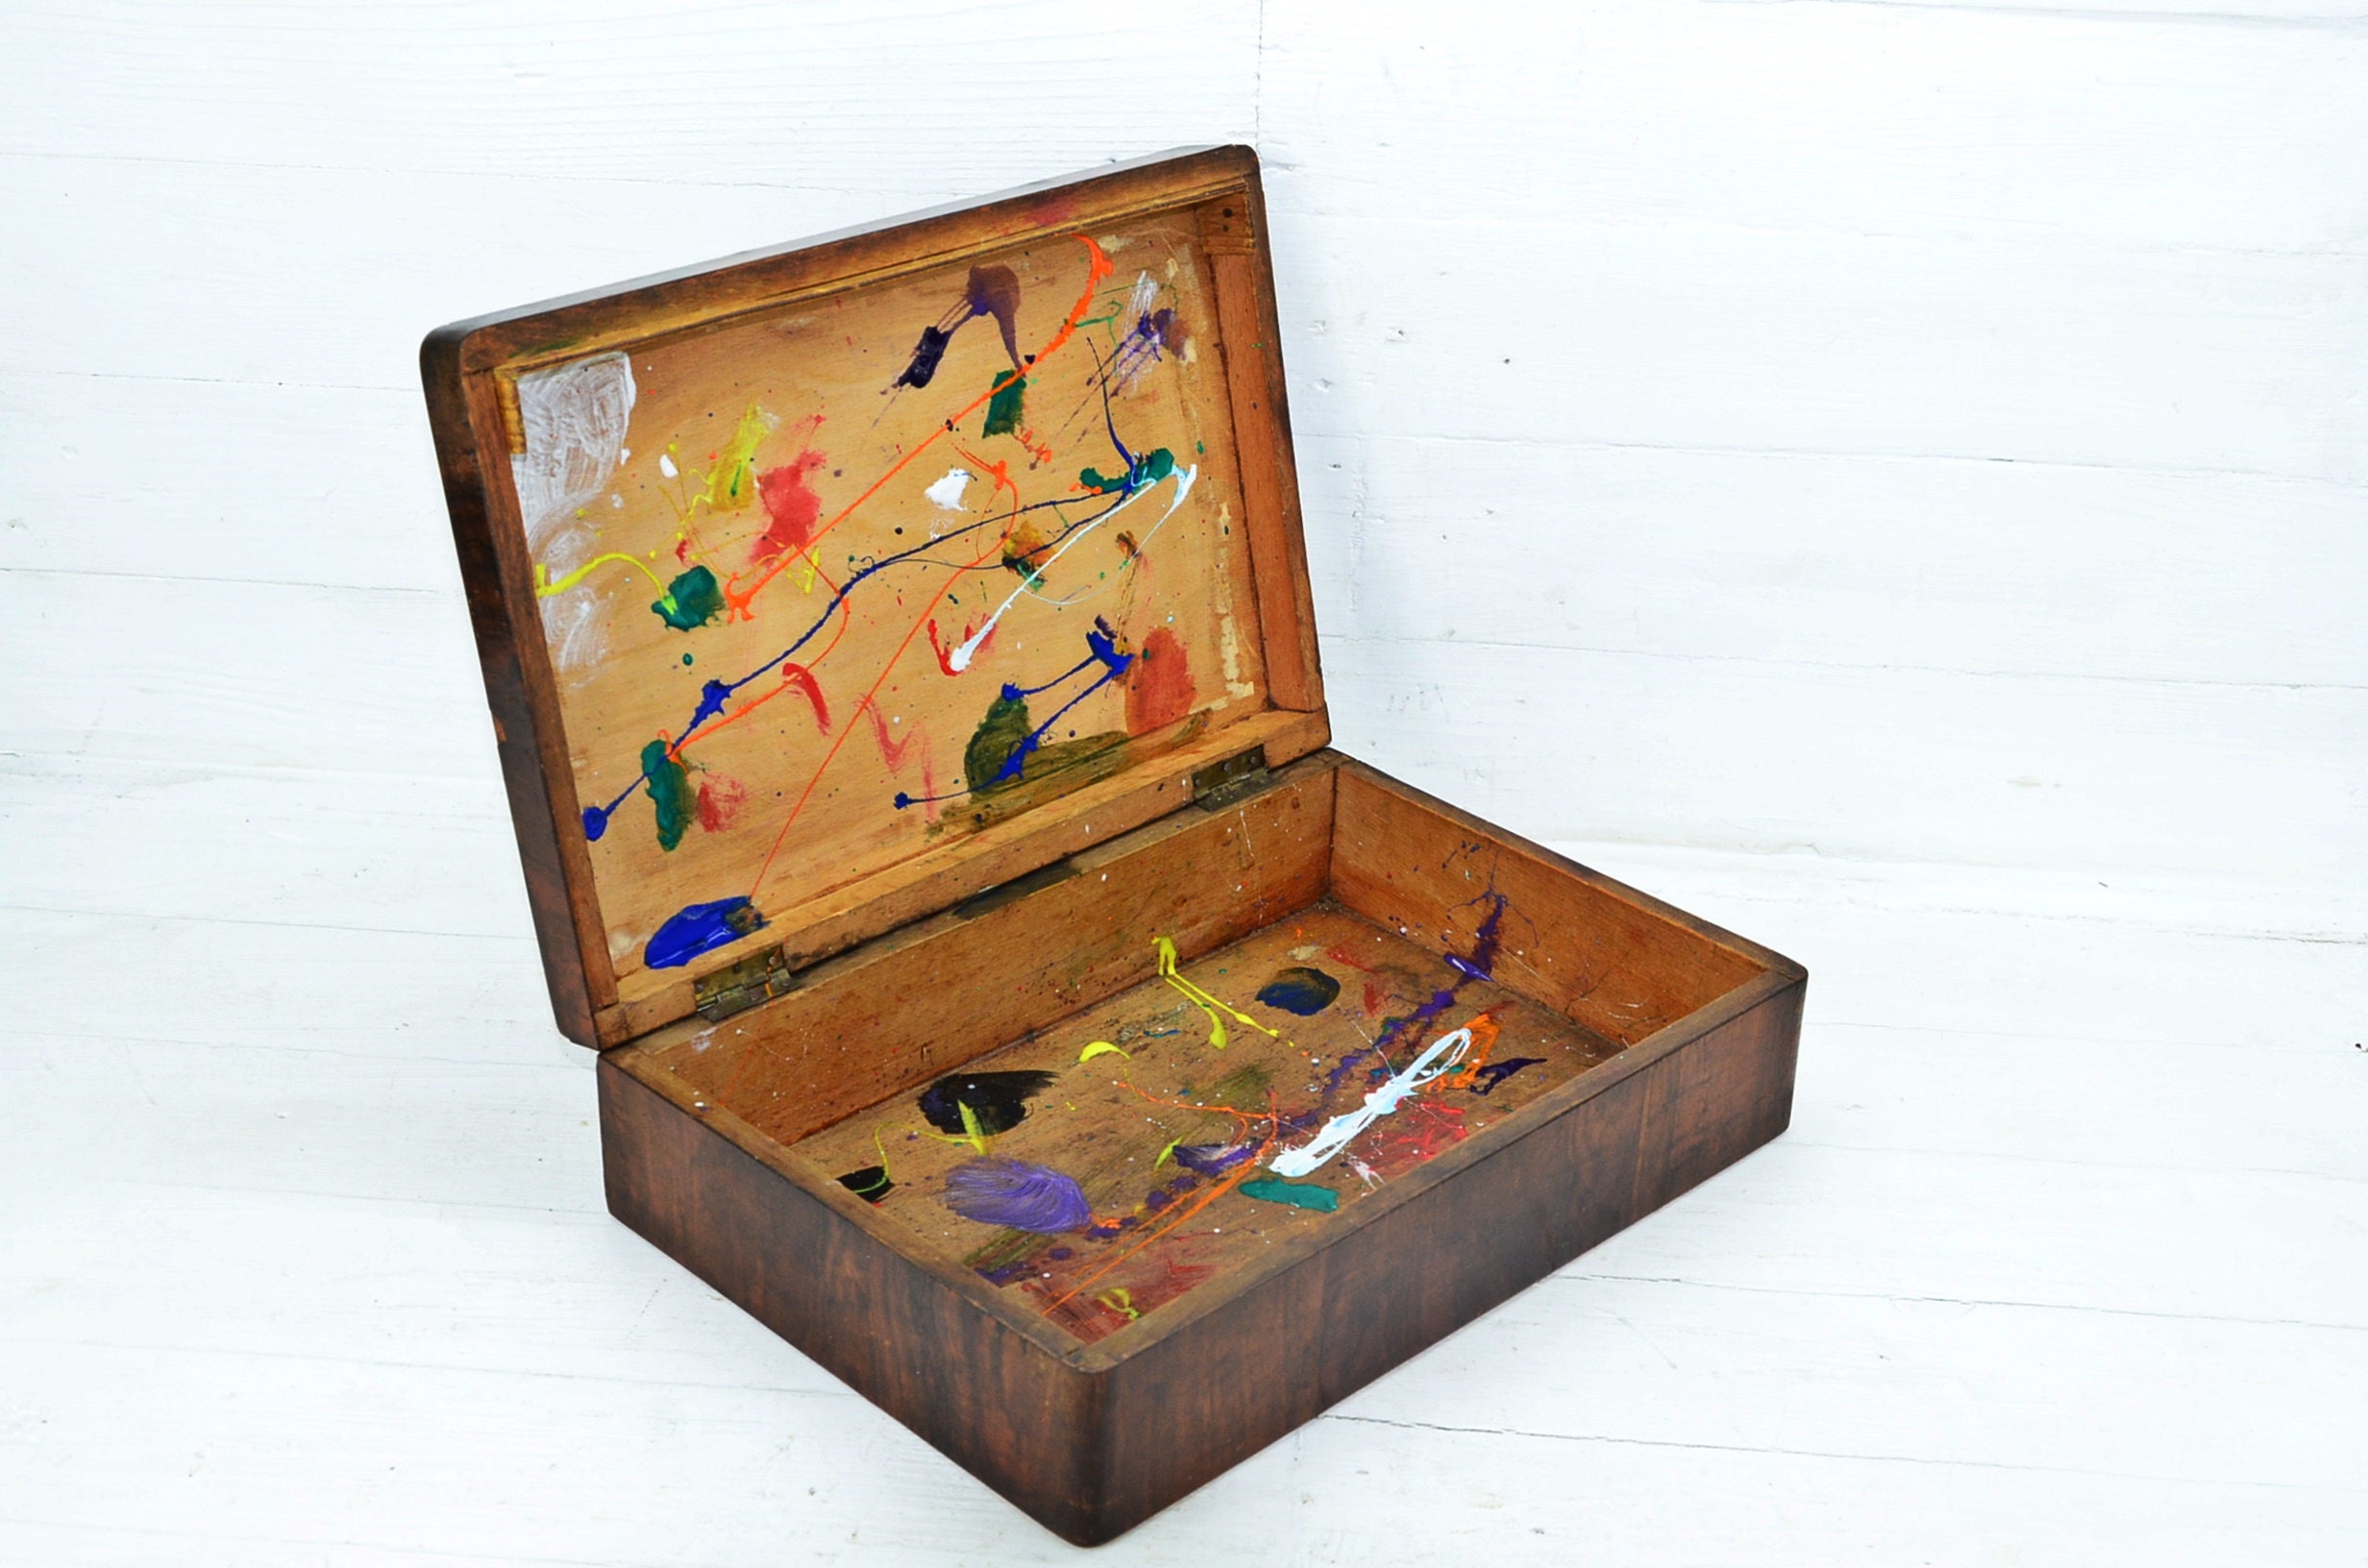 Vintage Wooden Artist Paint Box, Antique Paint Box, Large Artist